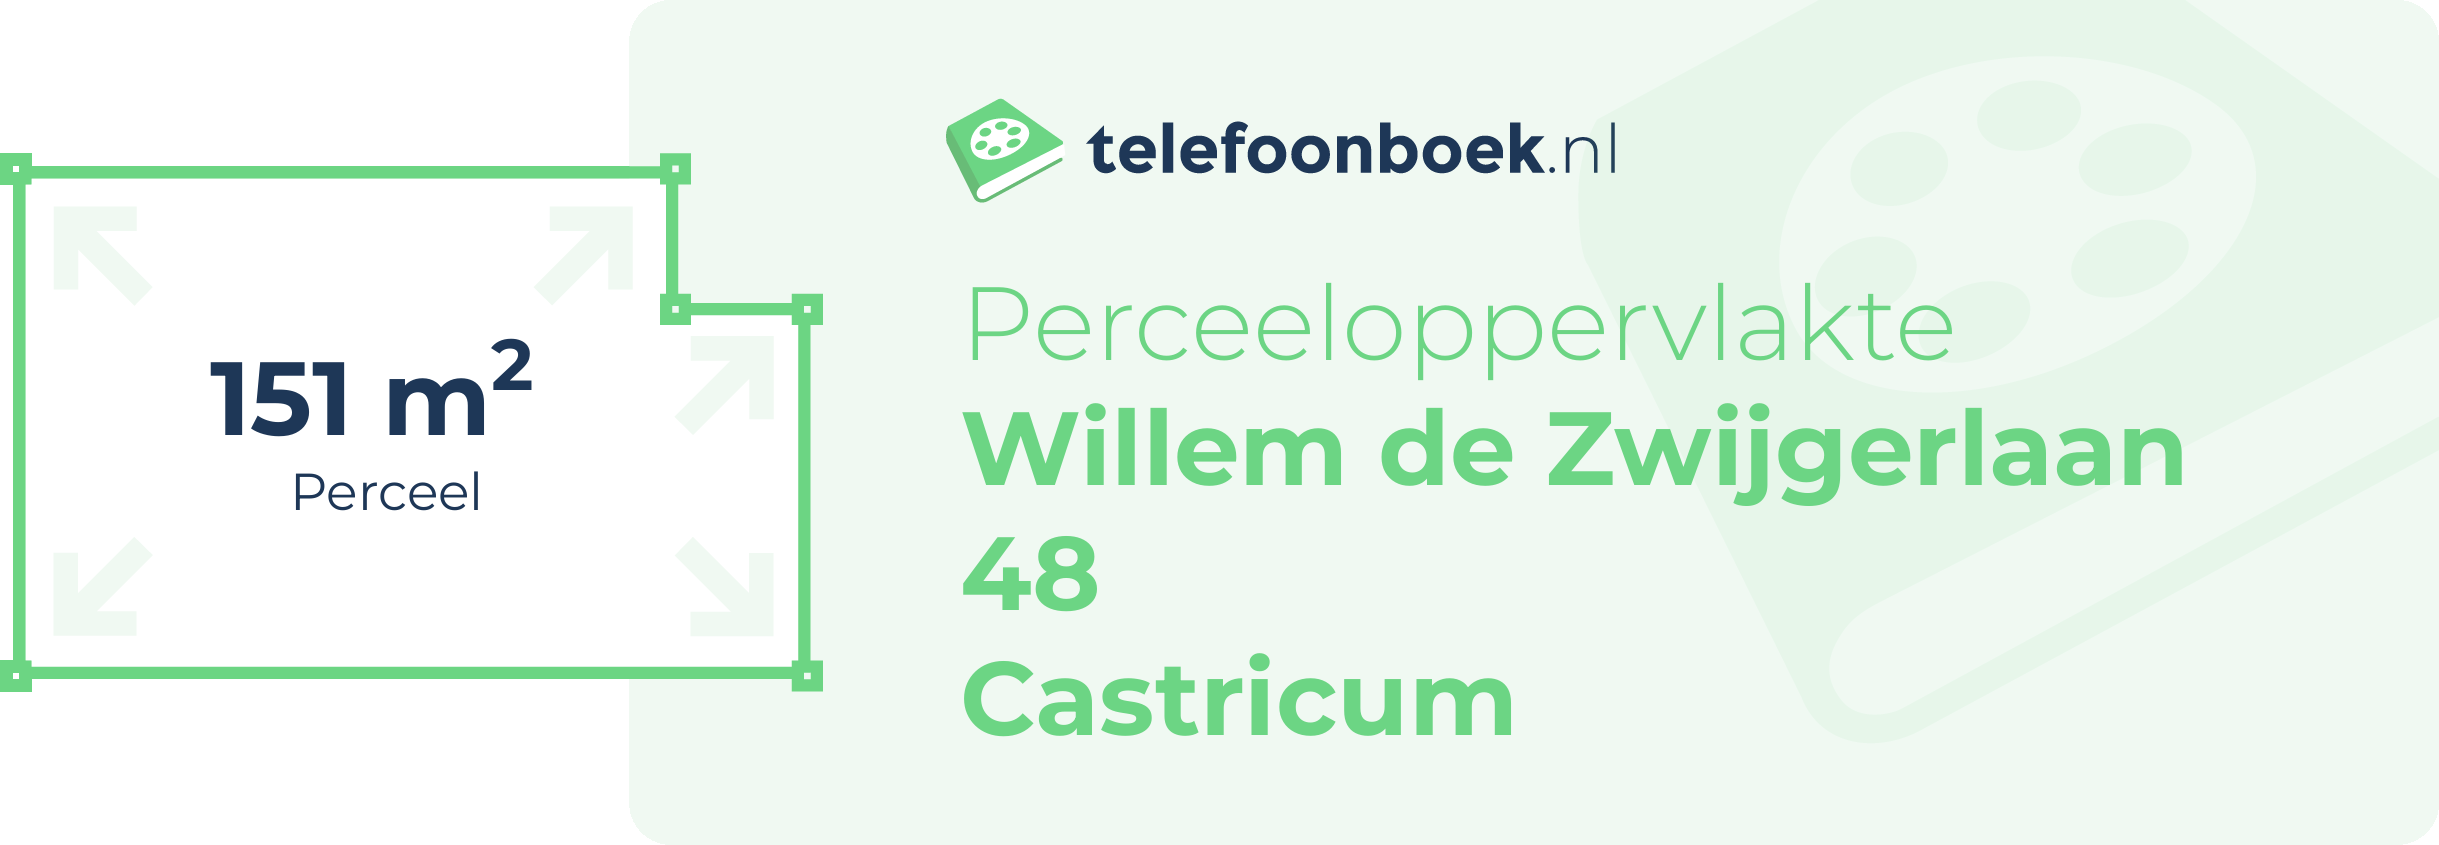 Perceeloppervlakte Willem De Zwijgerlaan 48 Castricum